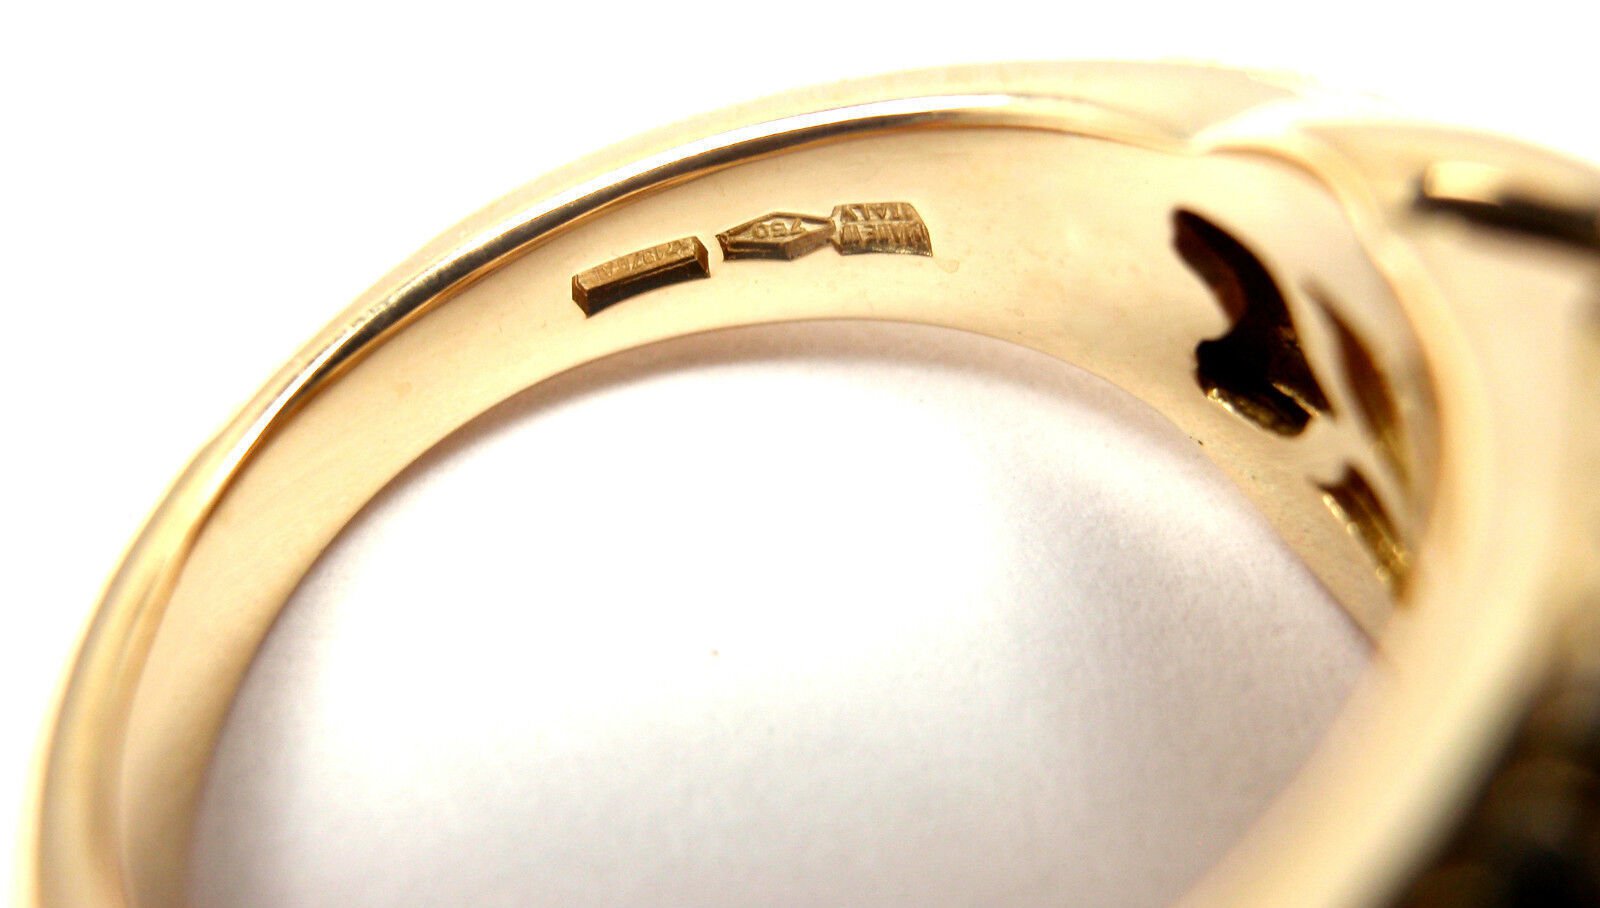 Bulgari Jewelry & Watches:Fine Jewelry:Rings Authentic! Bulgari Bvlgari 18k Yellow Gold Diamond Band Ring